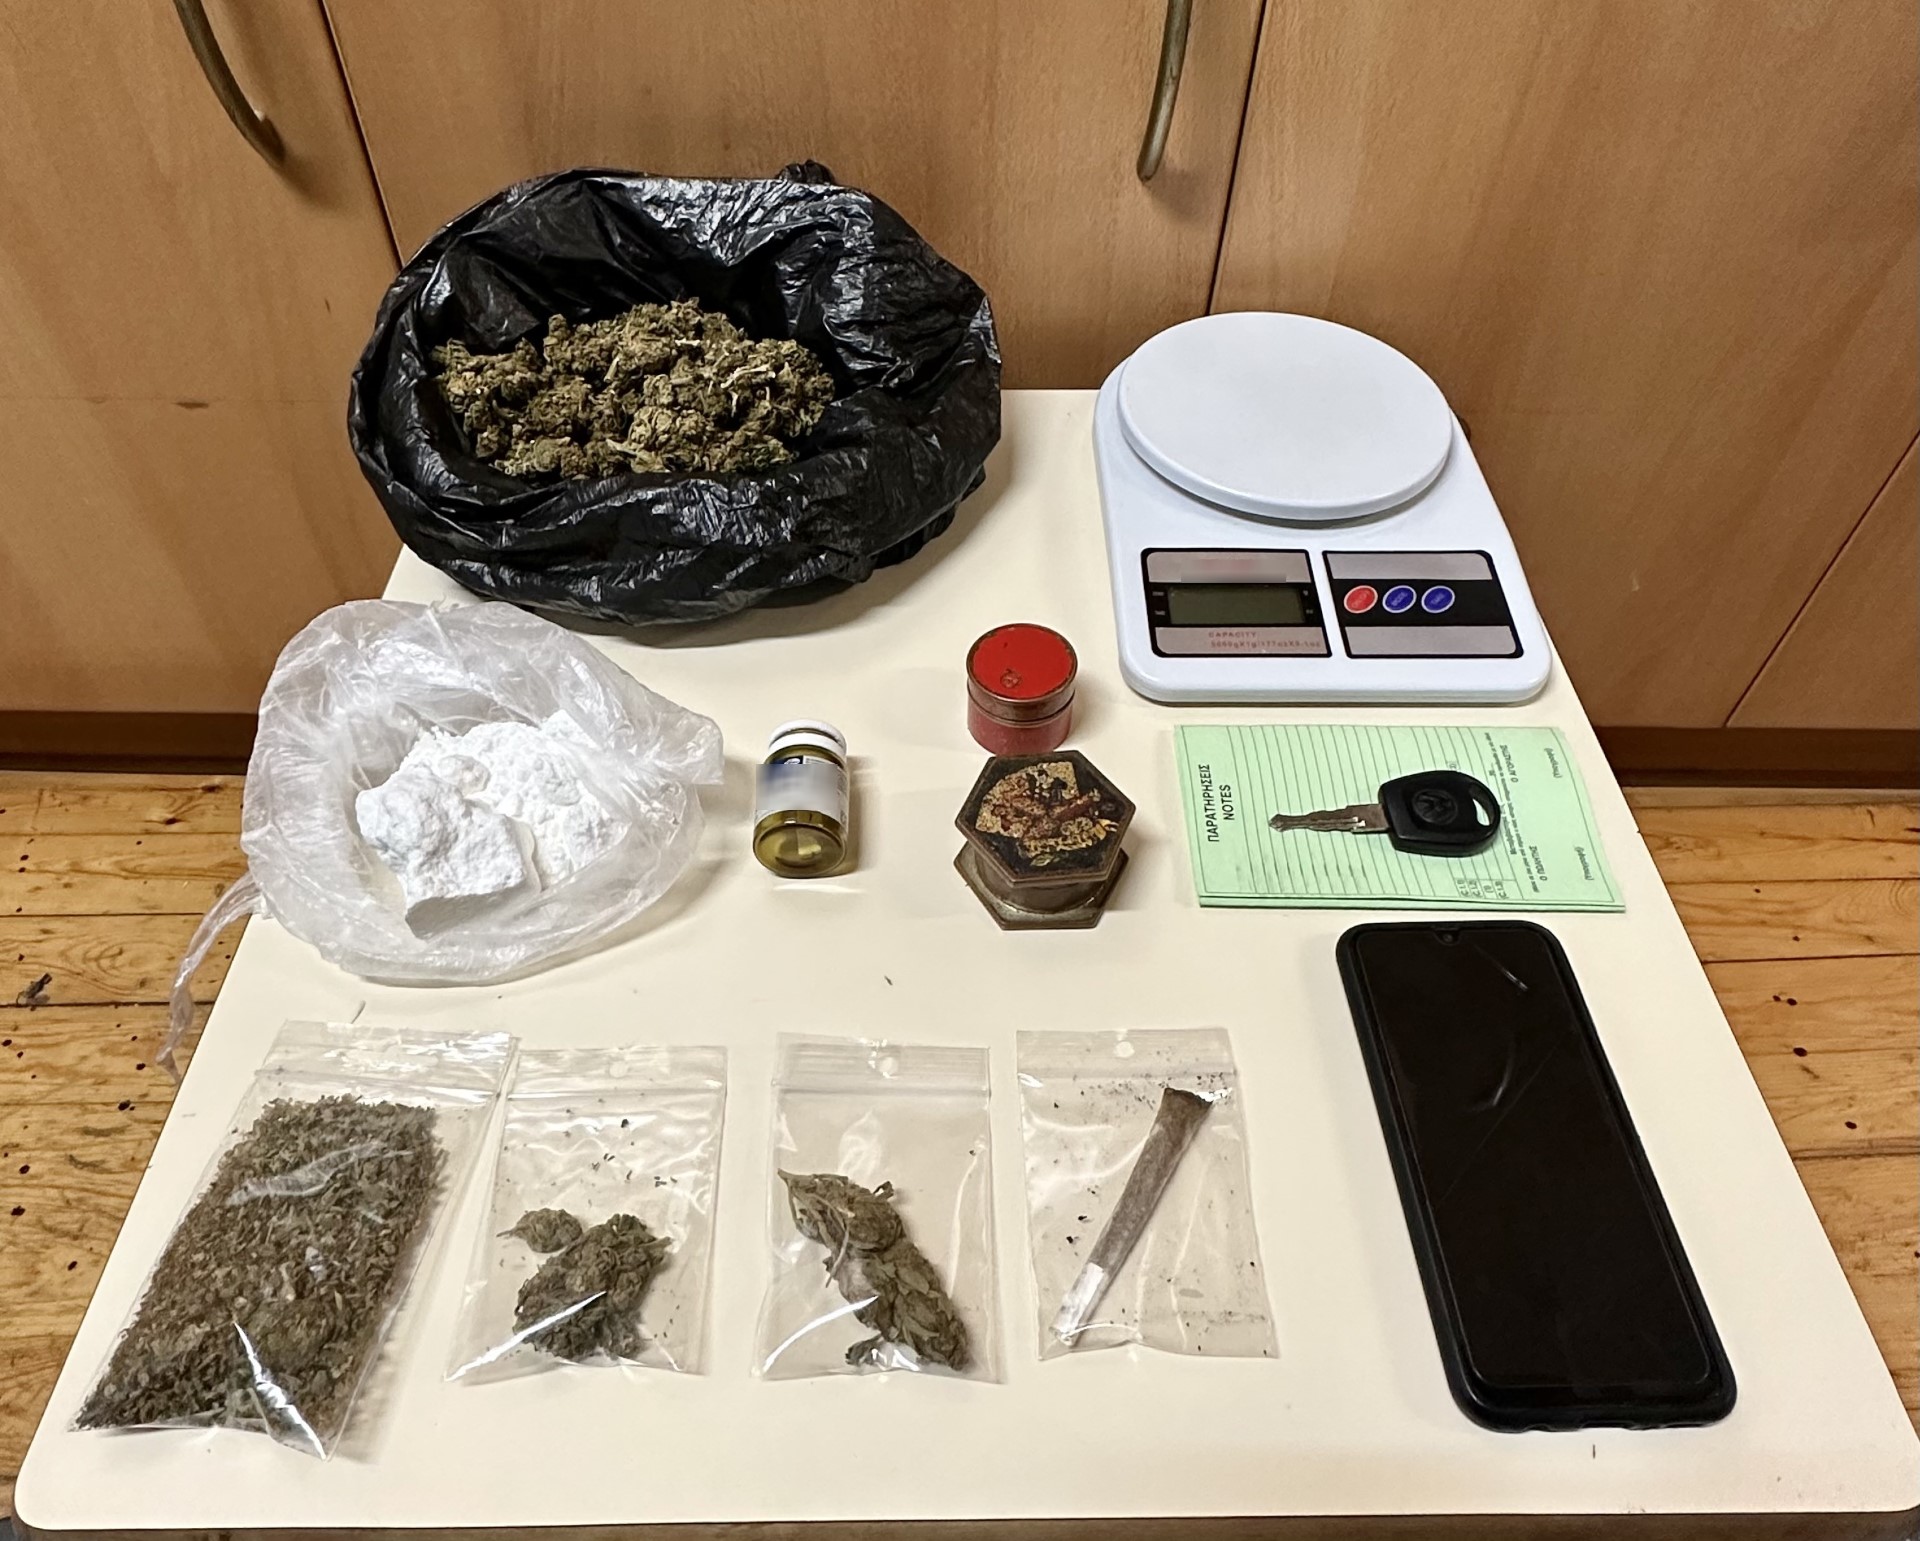 Δύο συλλήψεις στο Ρέθυμνο – Κατασχέθηκαν περισσότερα από 100 γρ. κοκαΐνης